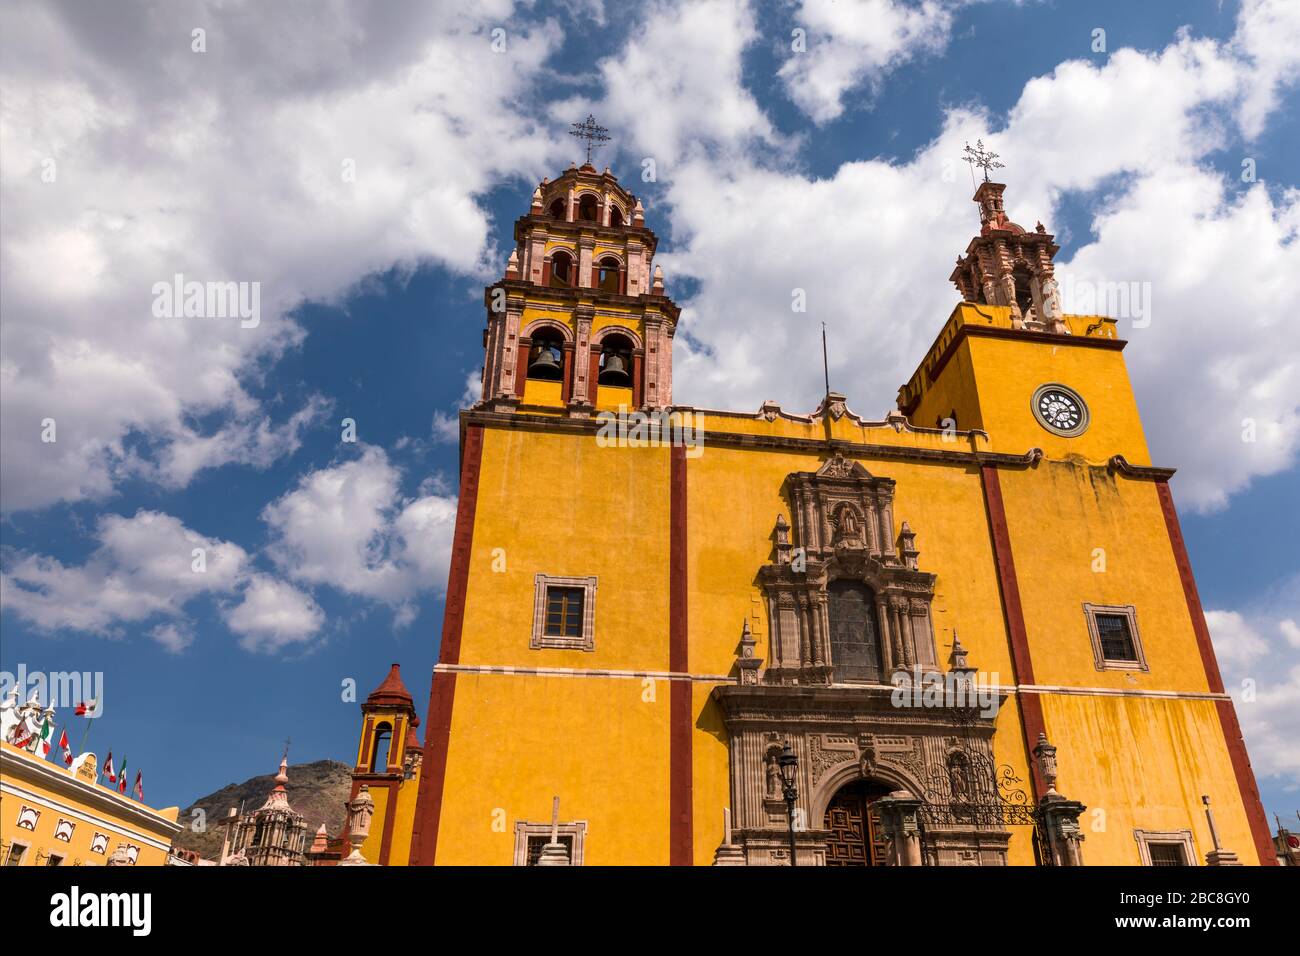 Mexiko, Guanajuato, die Basïlica de Nuestra Seńora de Guanjuato, die Hauptkirche der Stadt. Spanische Kolonialarchitektur. Stockfoto